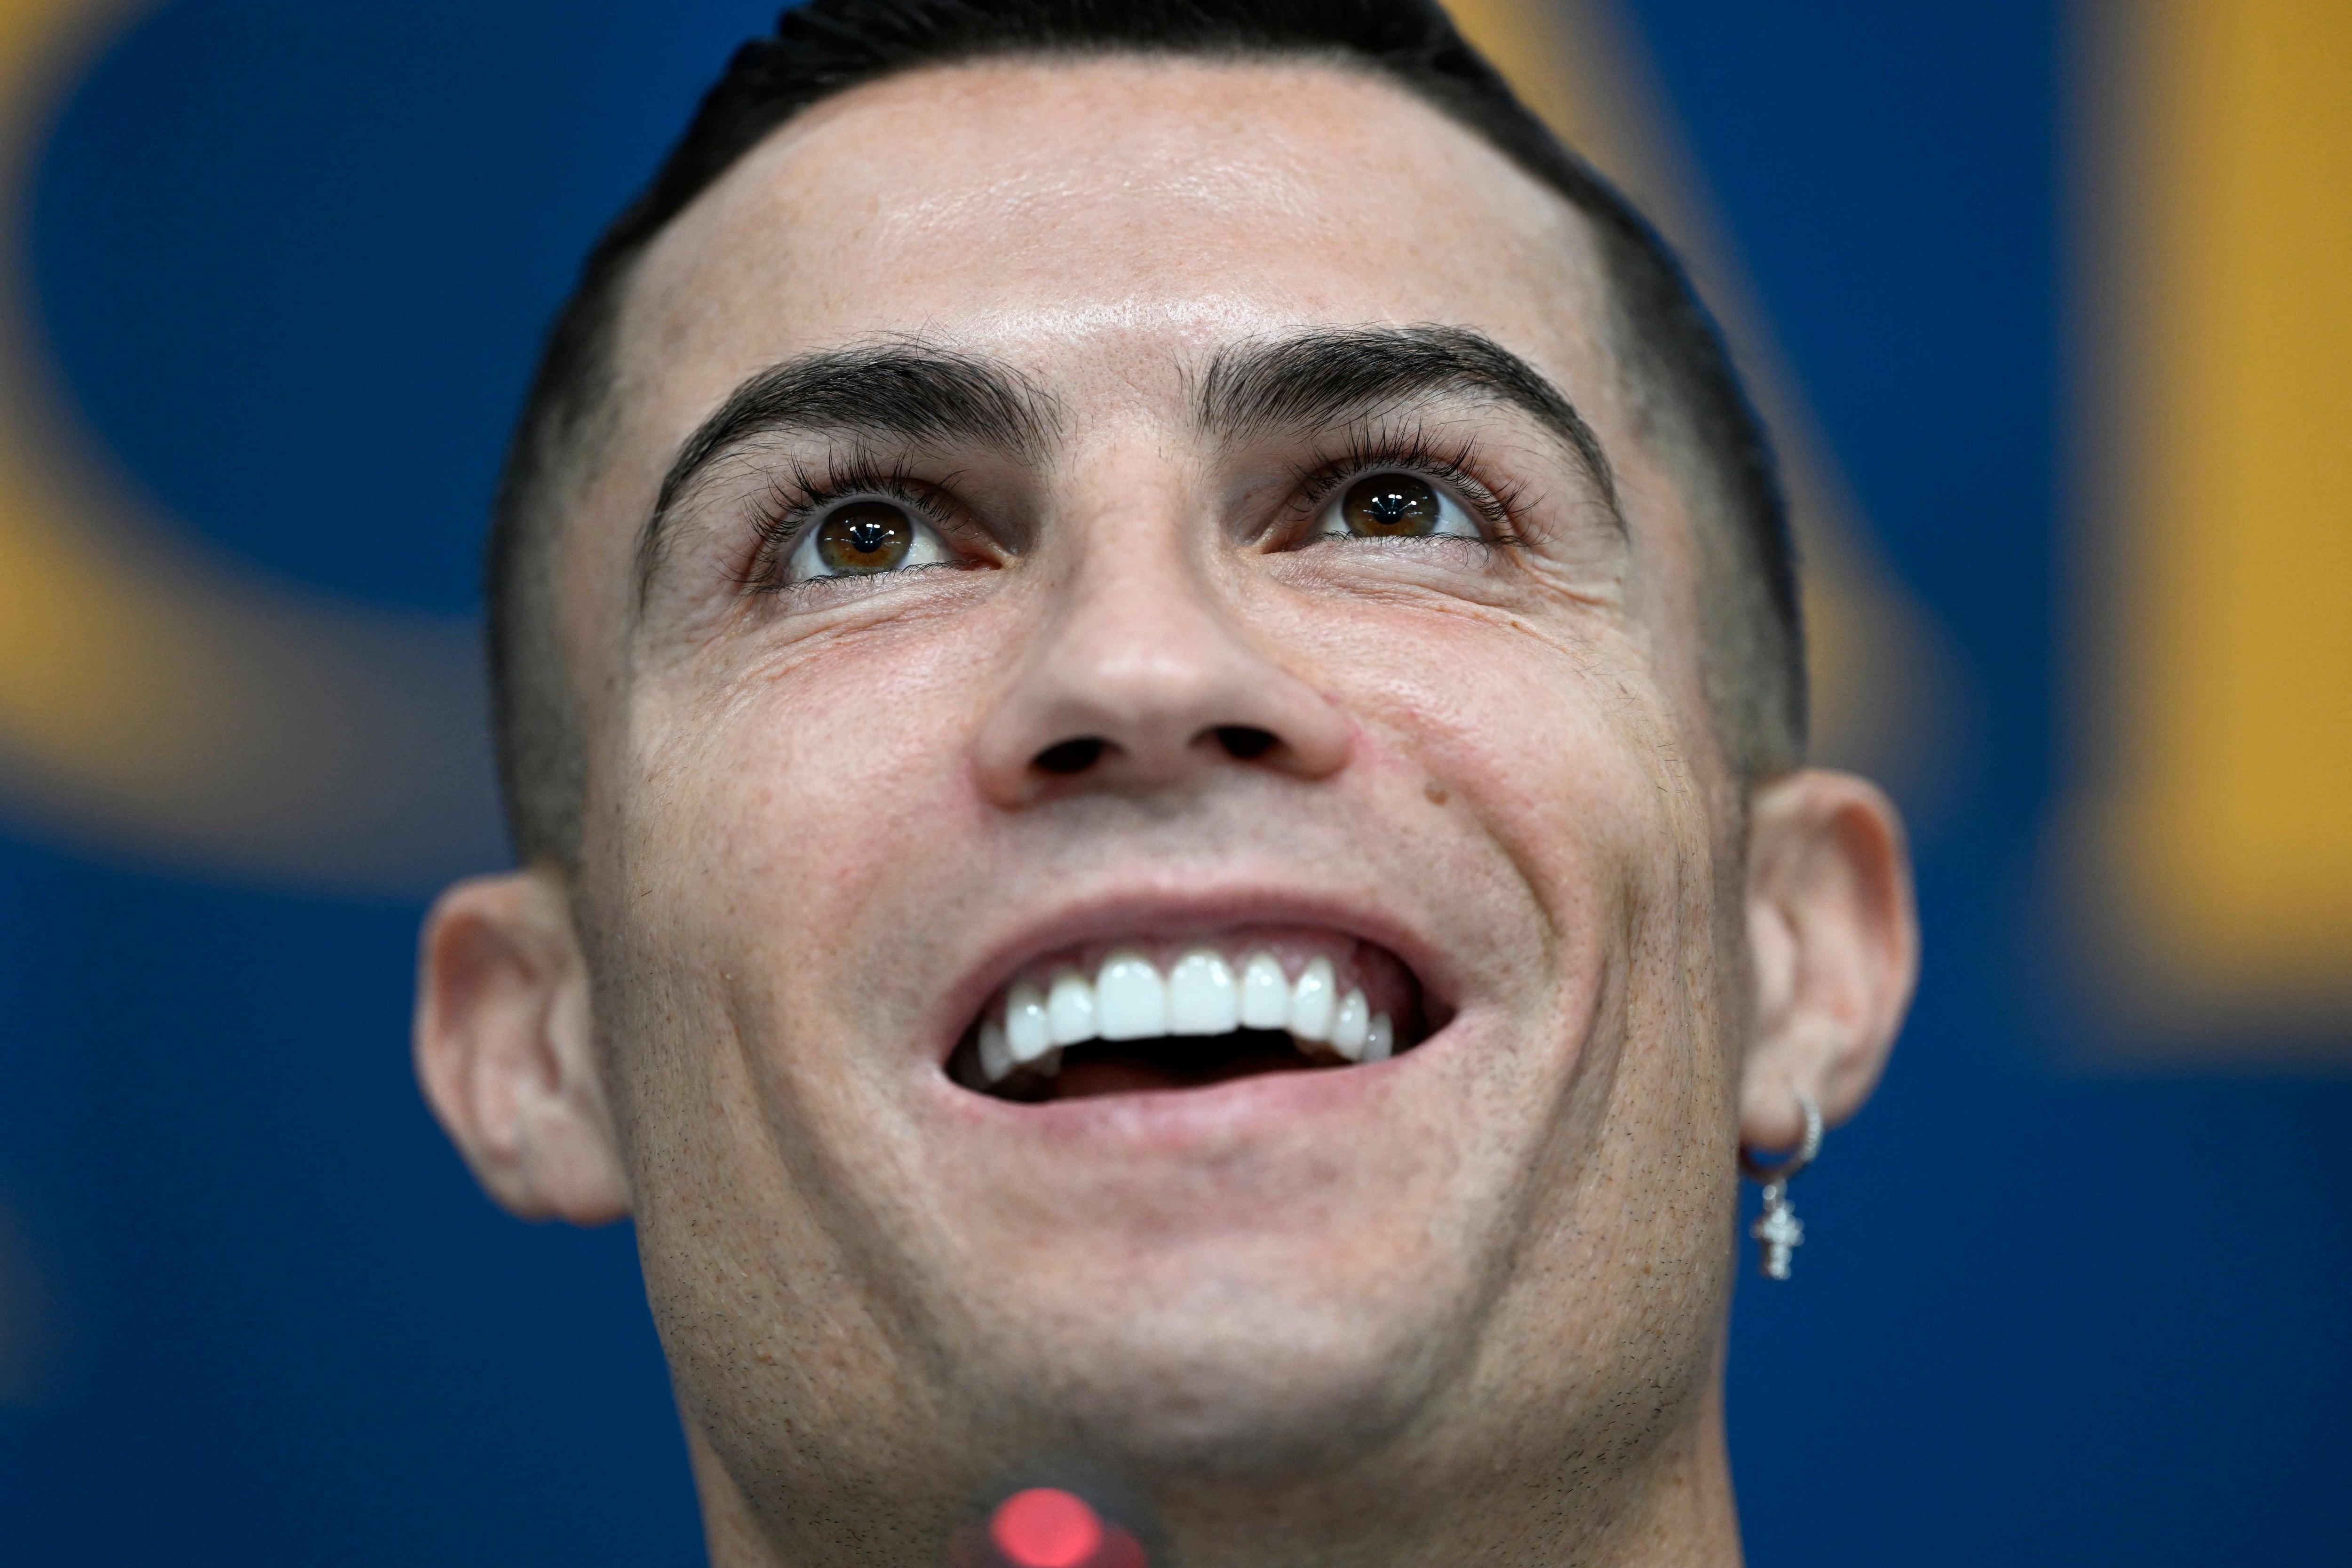 Cristiano Ronaldo ha generado especulaciones sobre cirugías estéticas, incluyendo posibles aplicaciones de bótox, según especialistas.